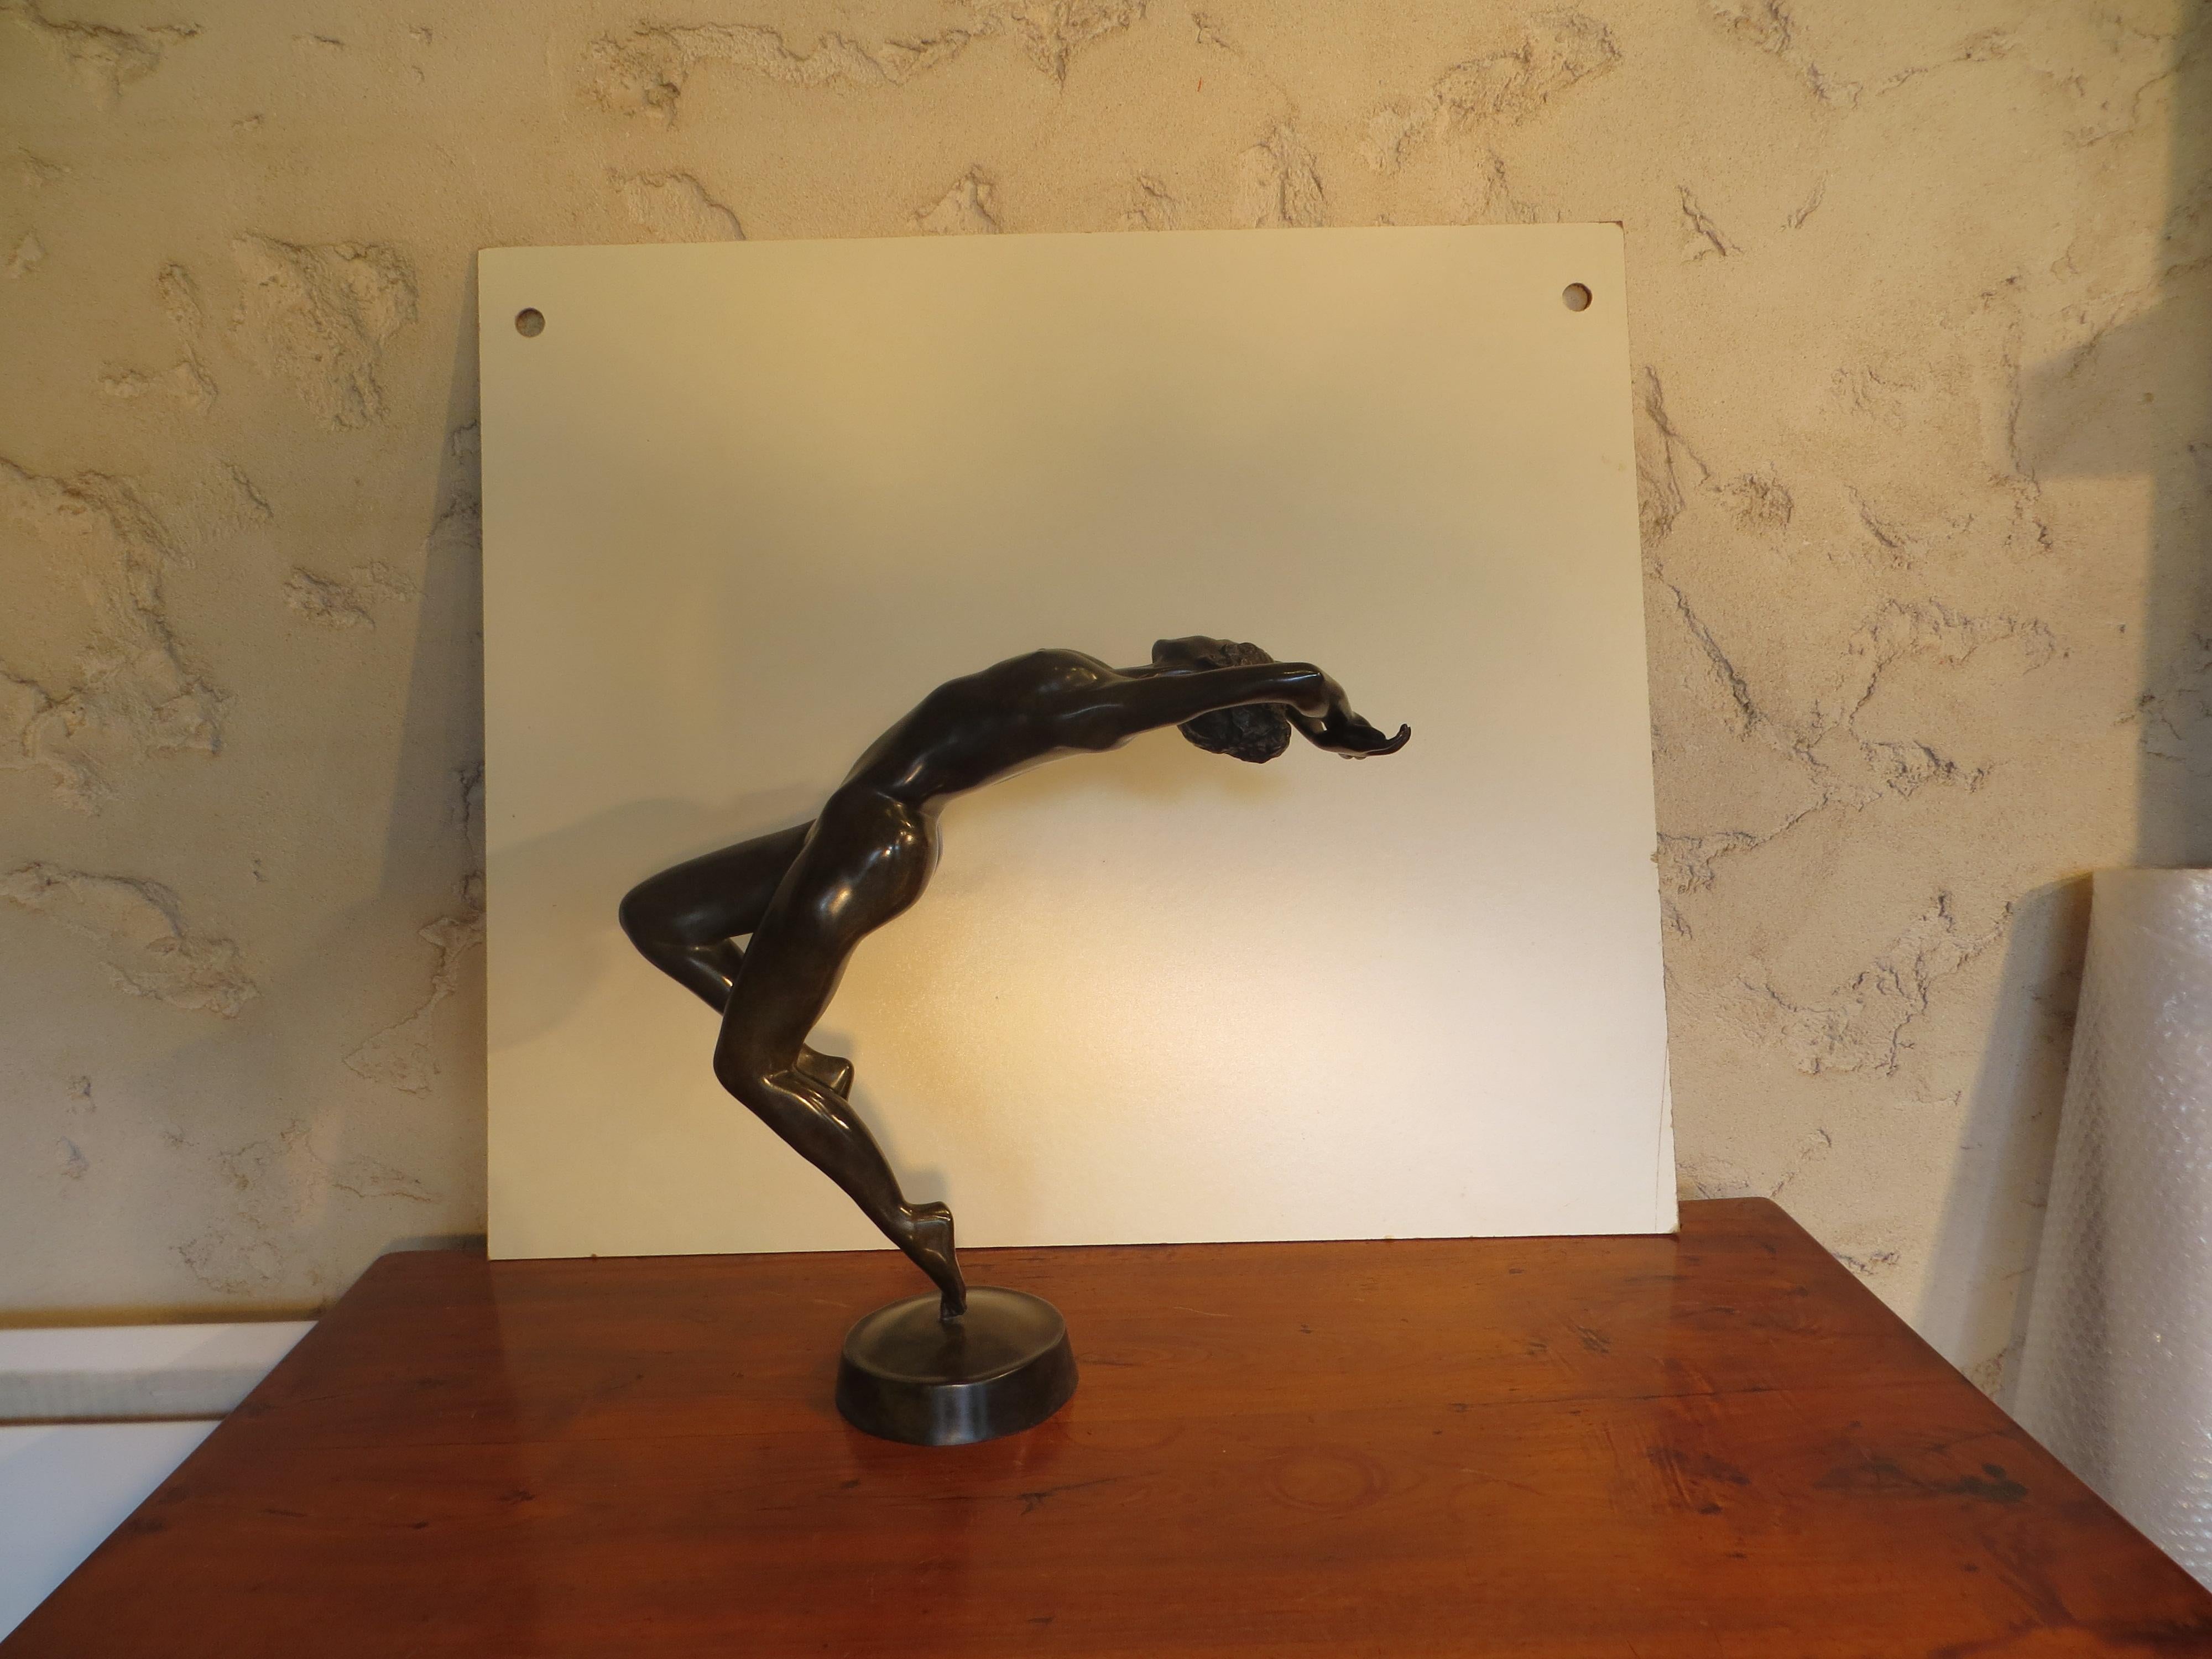 La Dance - Sculpture by Patrick Brun